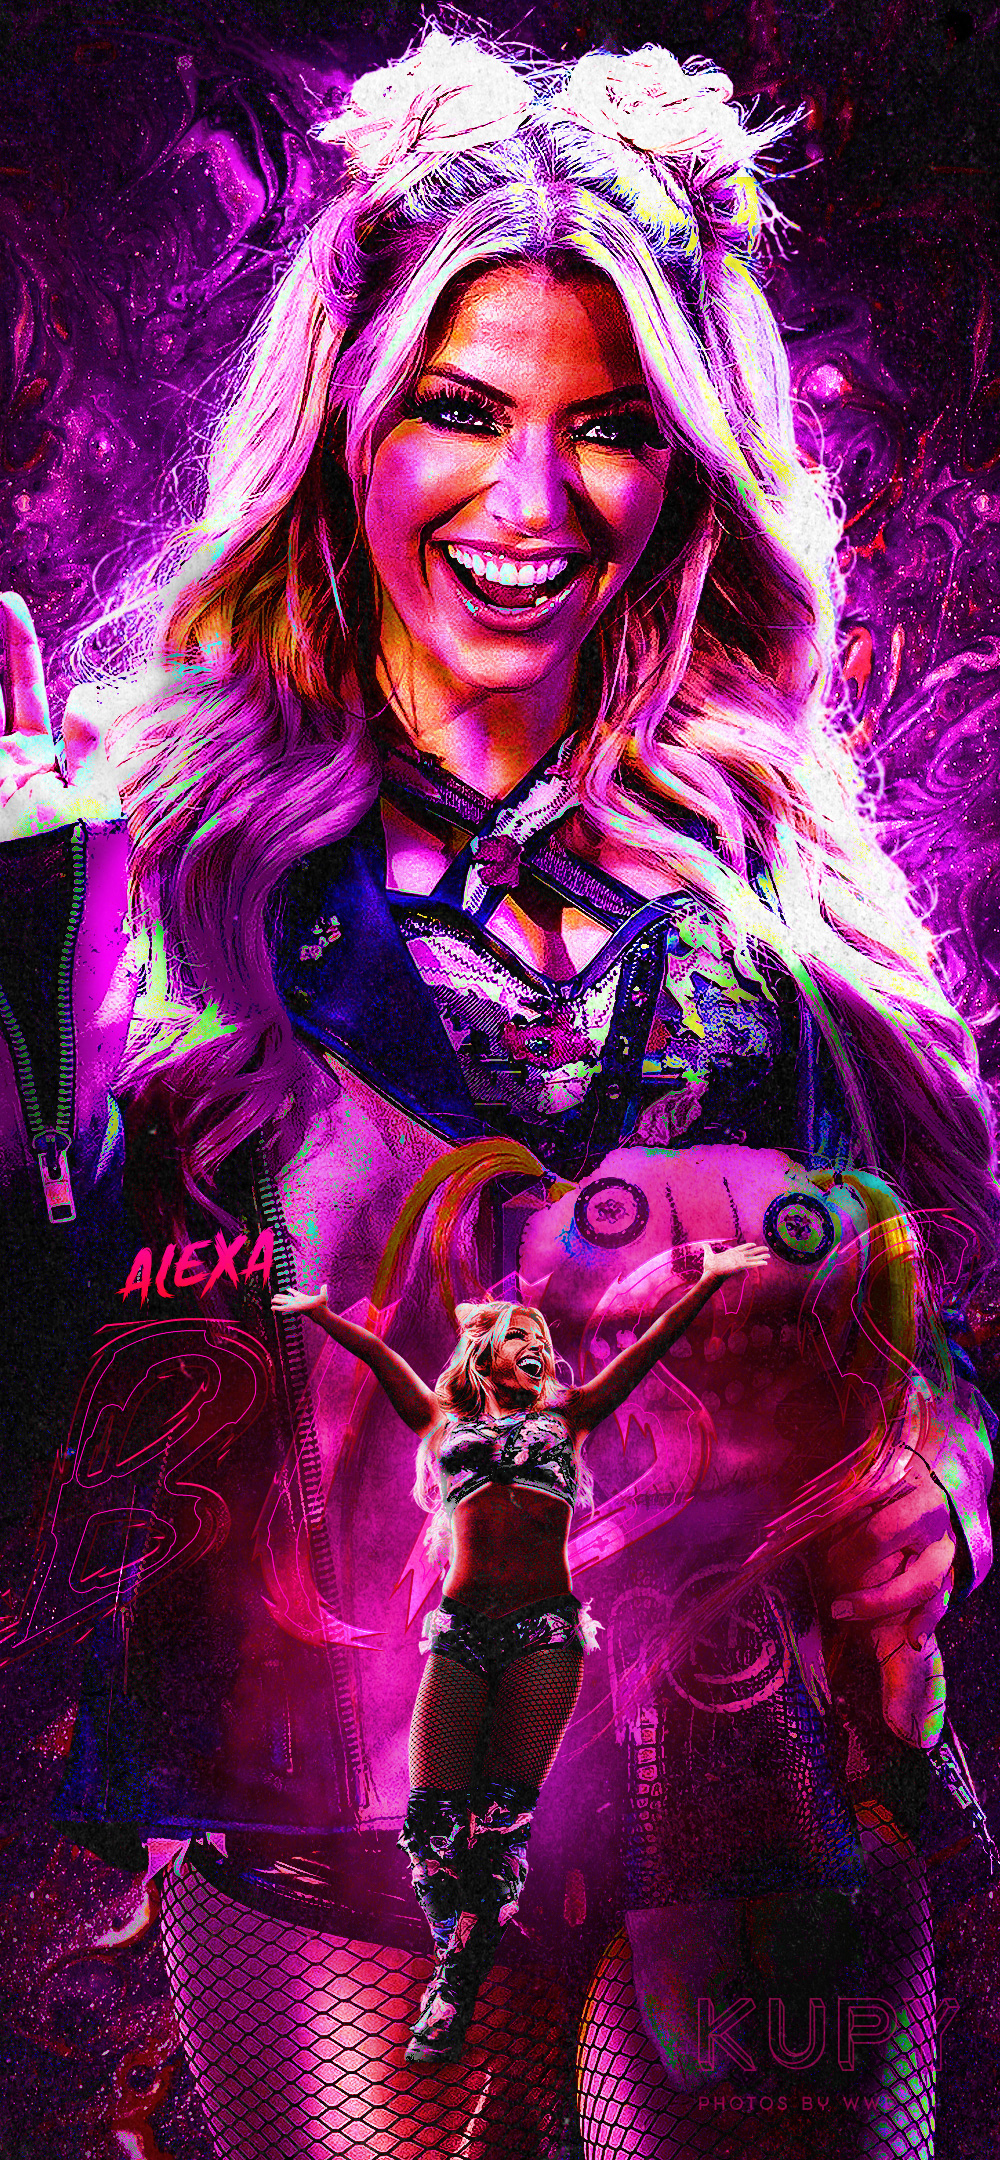 Alexa Bliss Xxx Video - Goddess' Alexa Bliss poster and mobile wallpaper! - Kupy Wrestling  Wallpapers